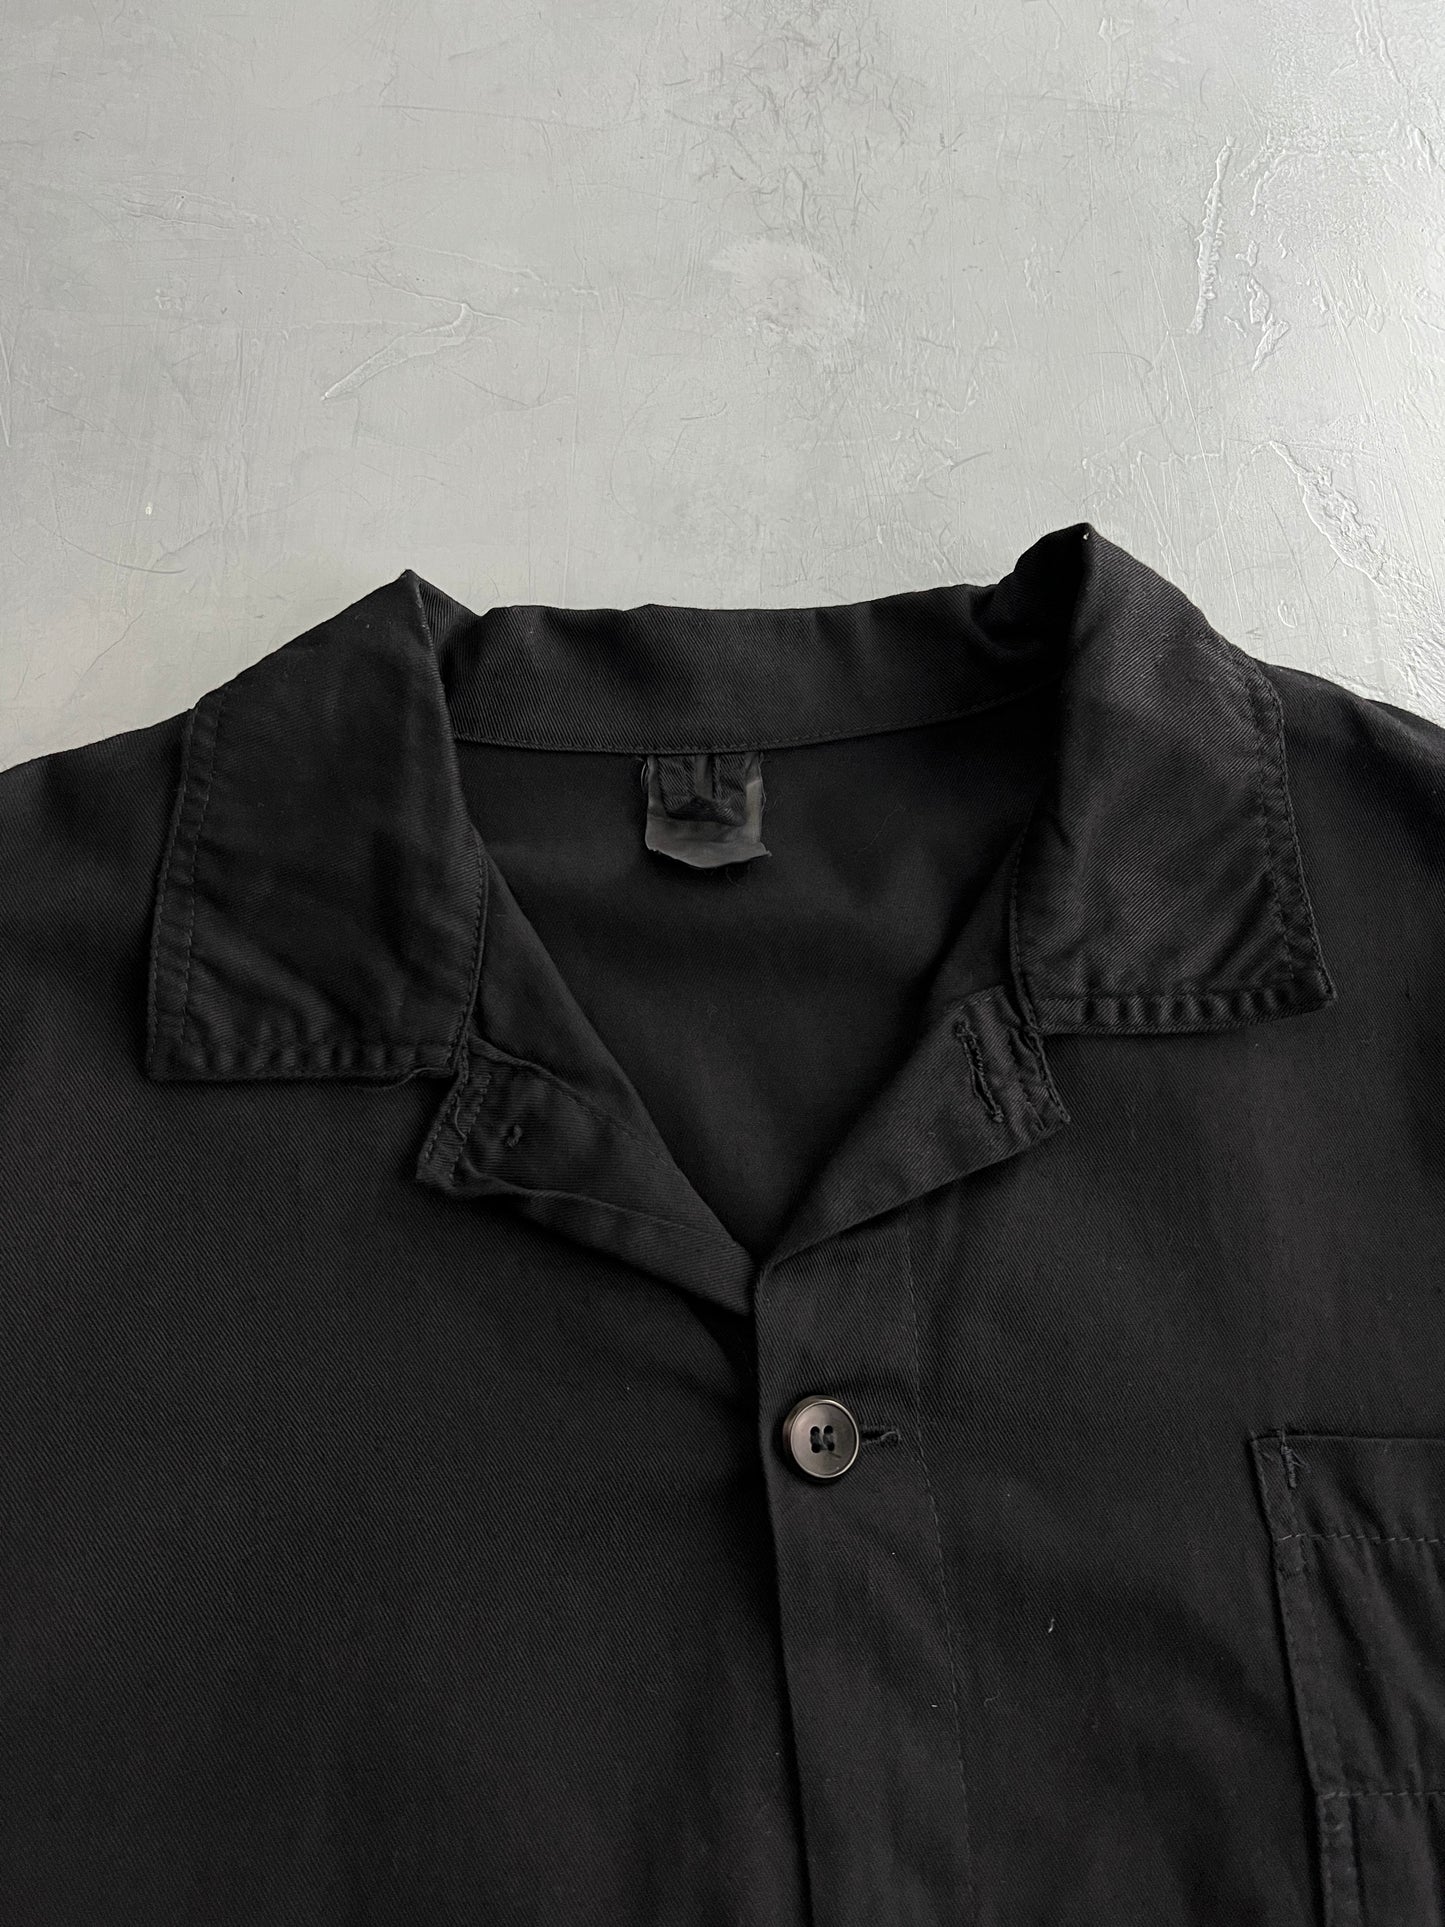 Overdyed Euro Chore Jacket [XL]